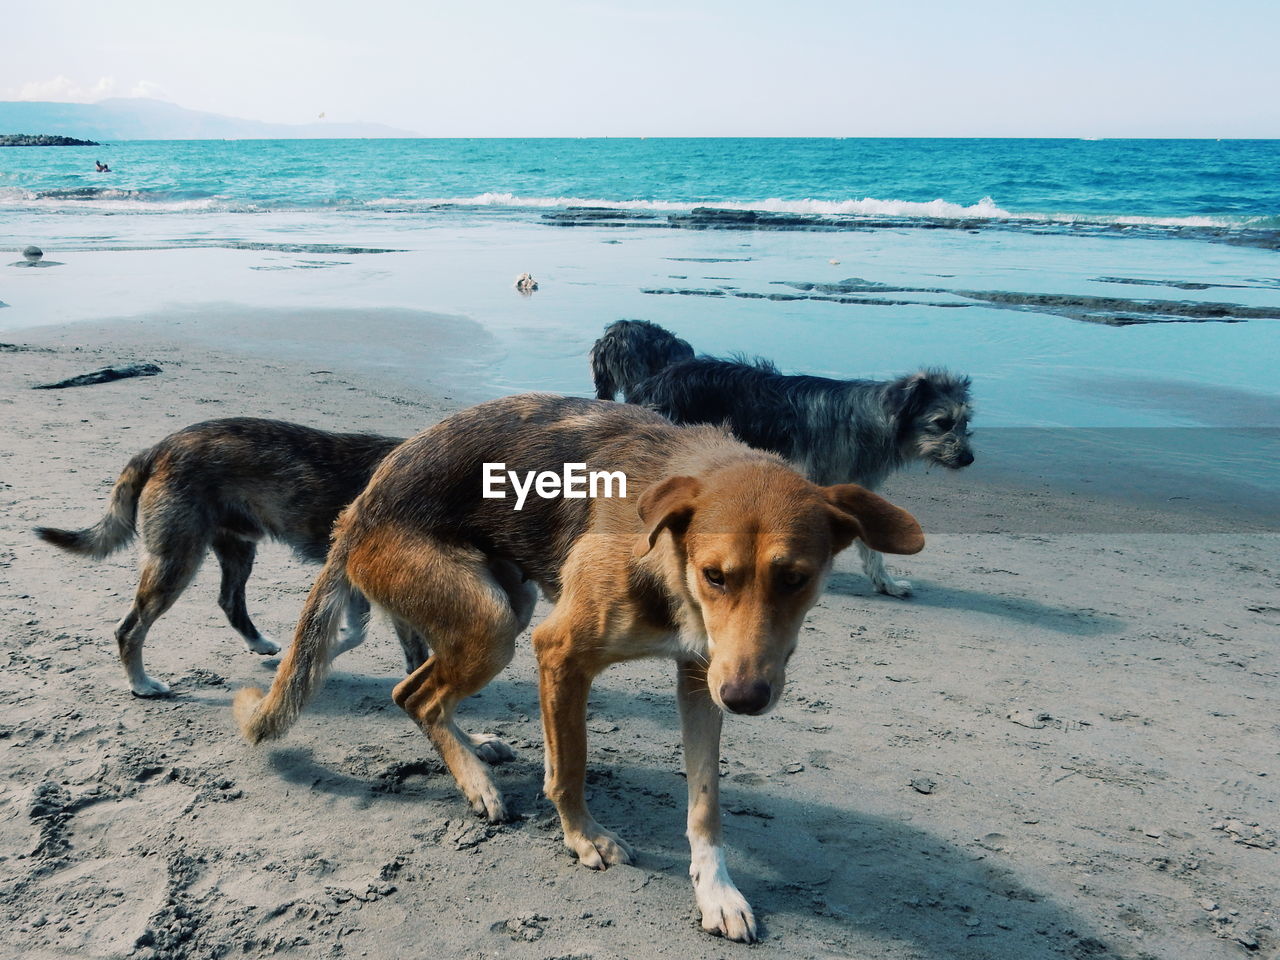 Dogs on sandy beach